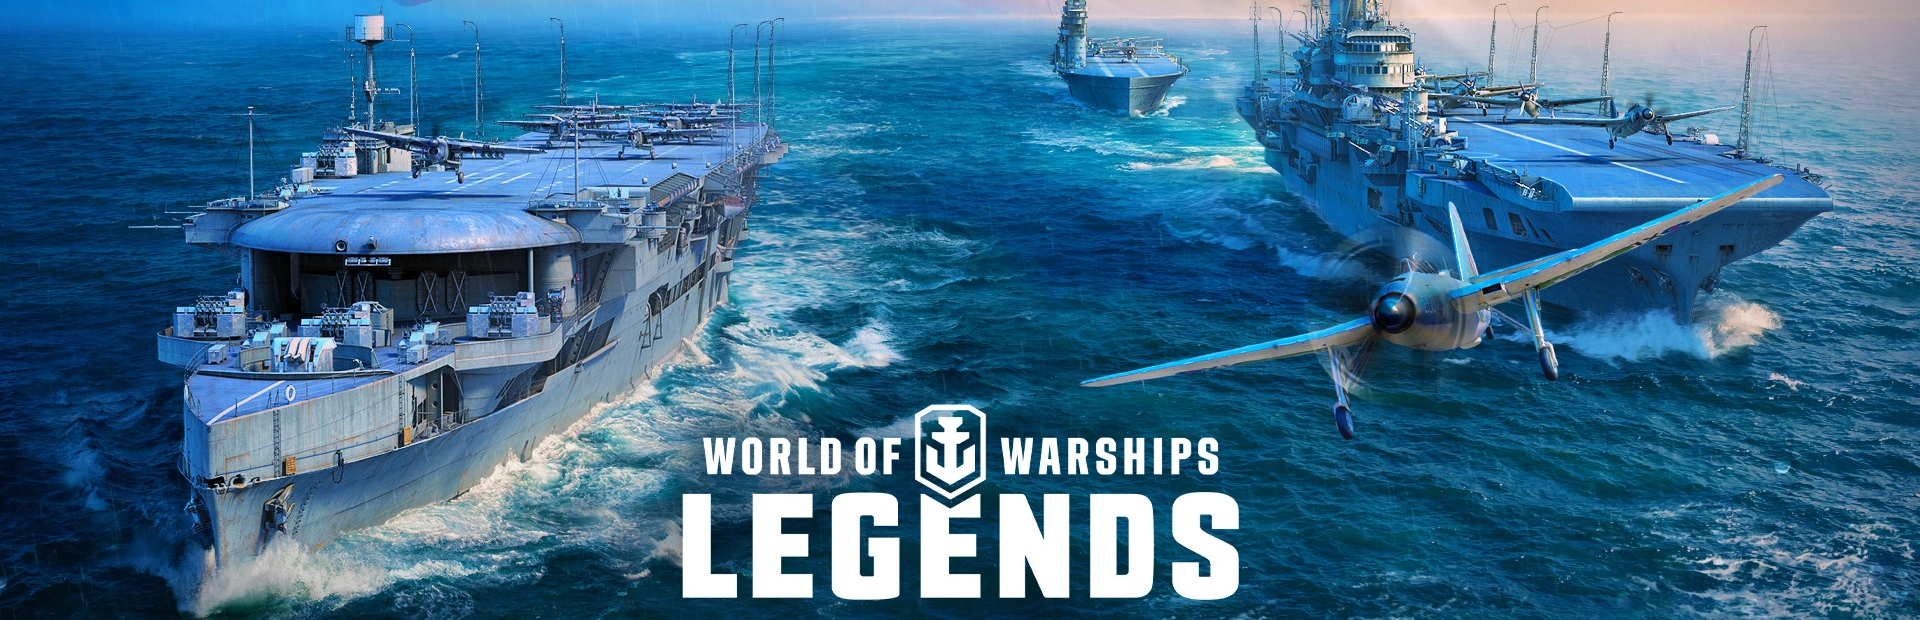 دانلود بازی World of Warships برای کامپیوتر | گیمباتو